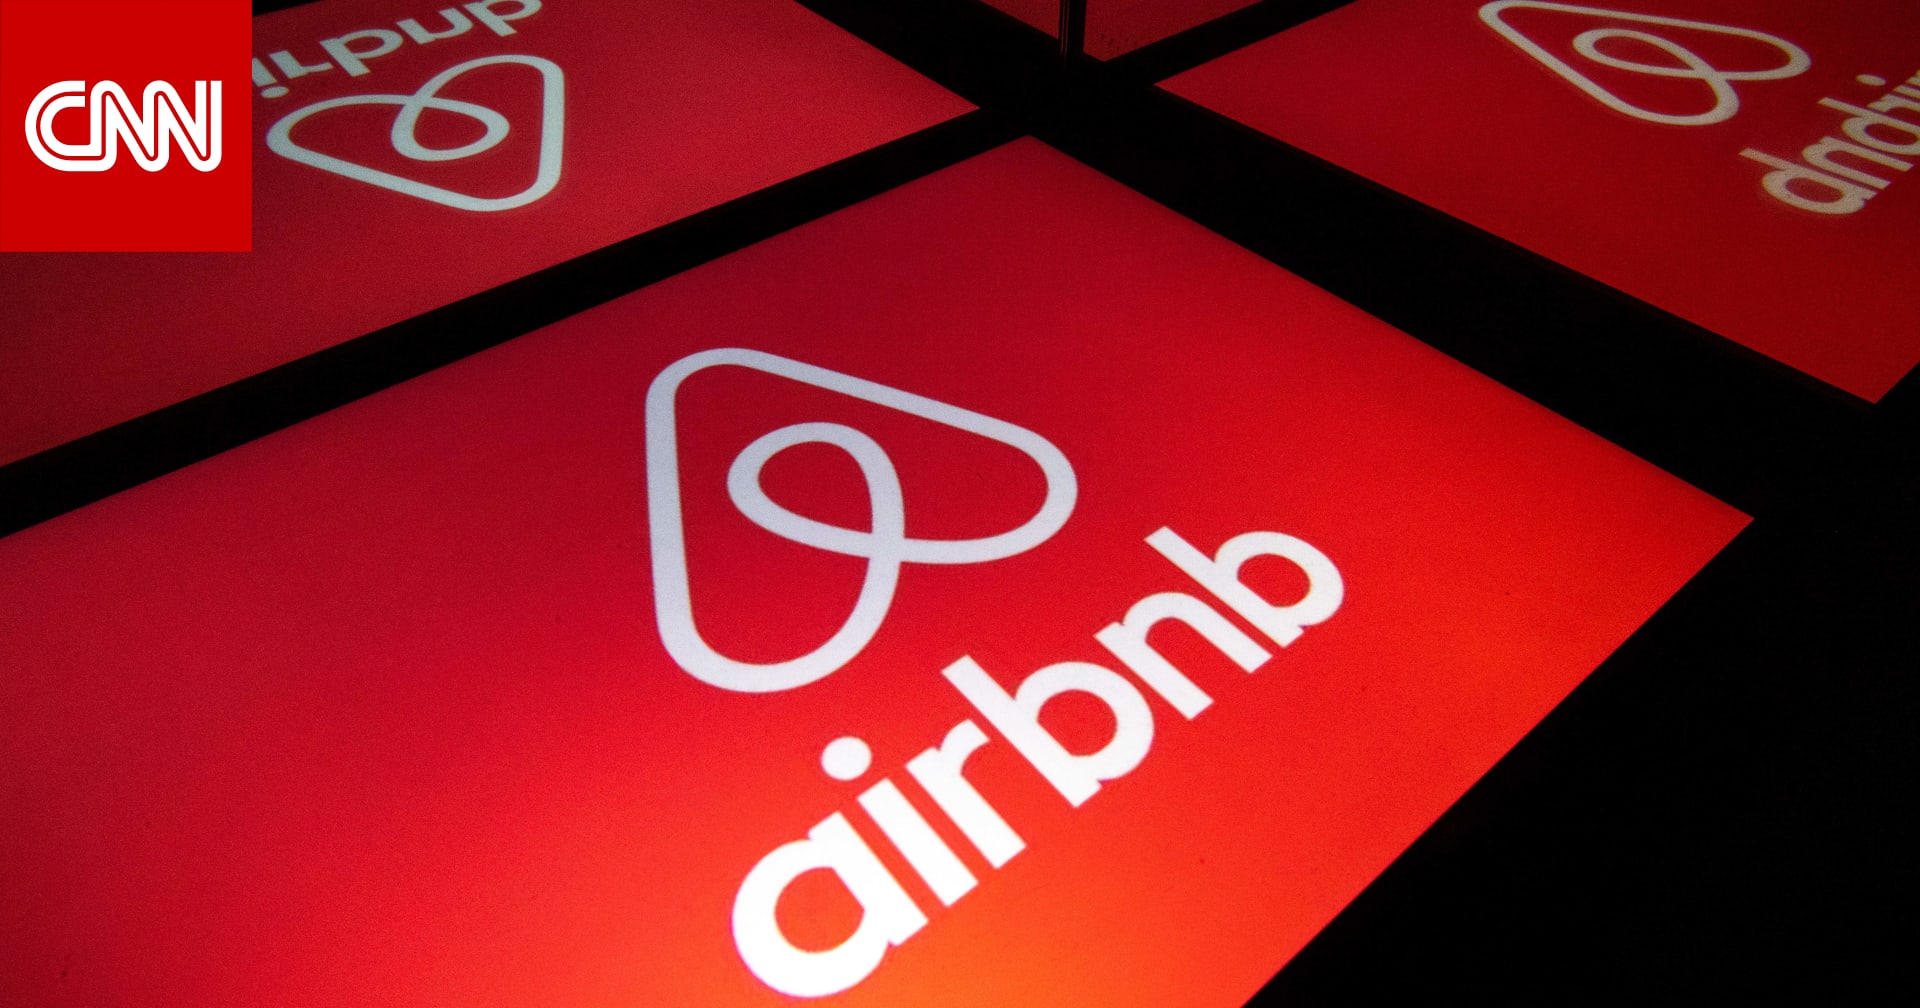 بعد شكاوى المستخدمين من الرسوم المخفية.. Airbnb تعلن أنها ستجعل أسعارها أوضح